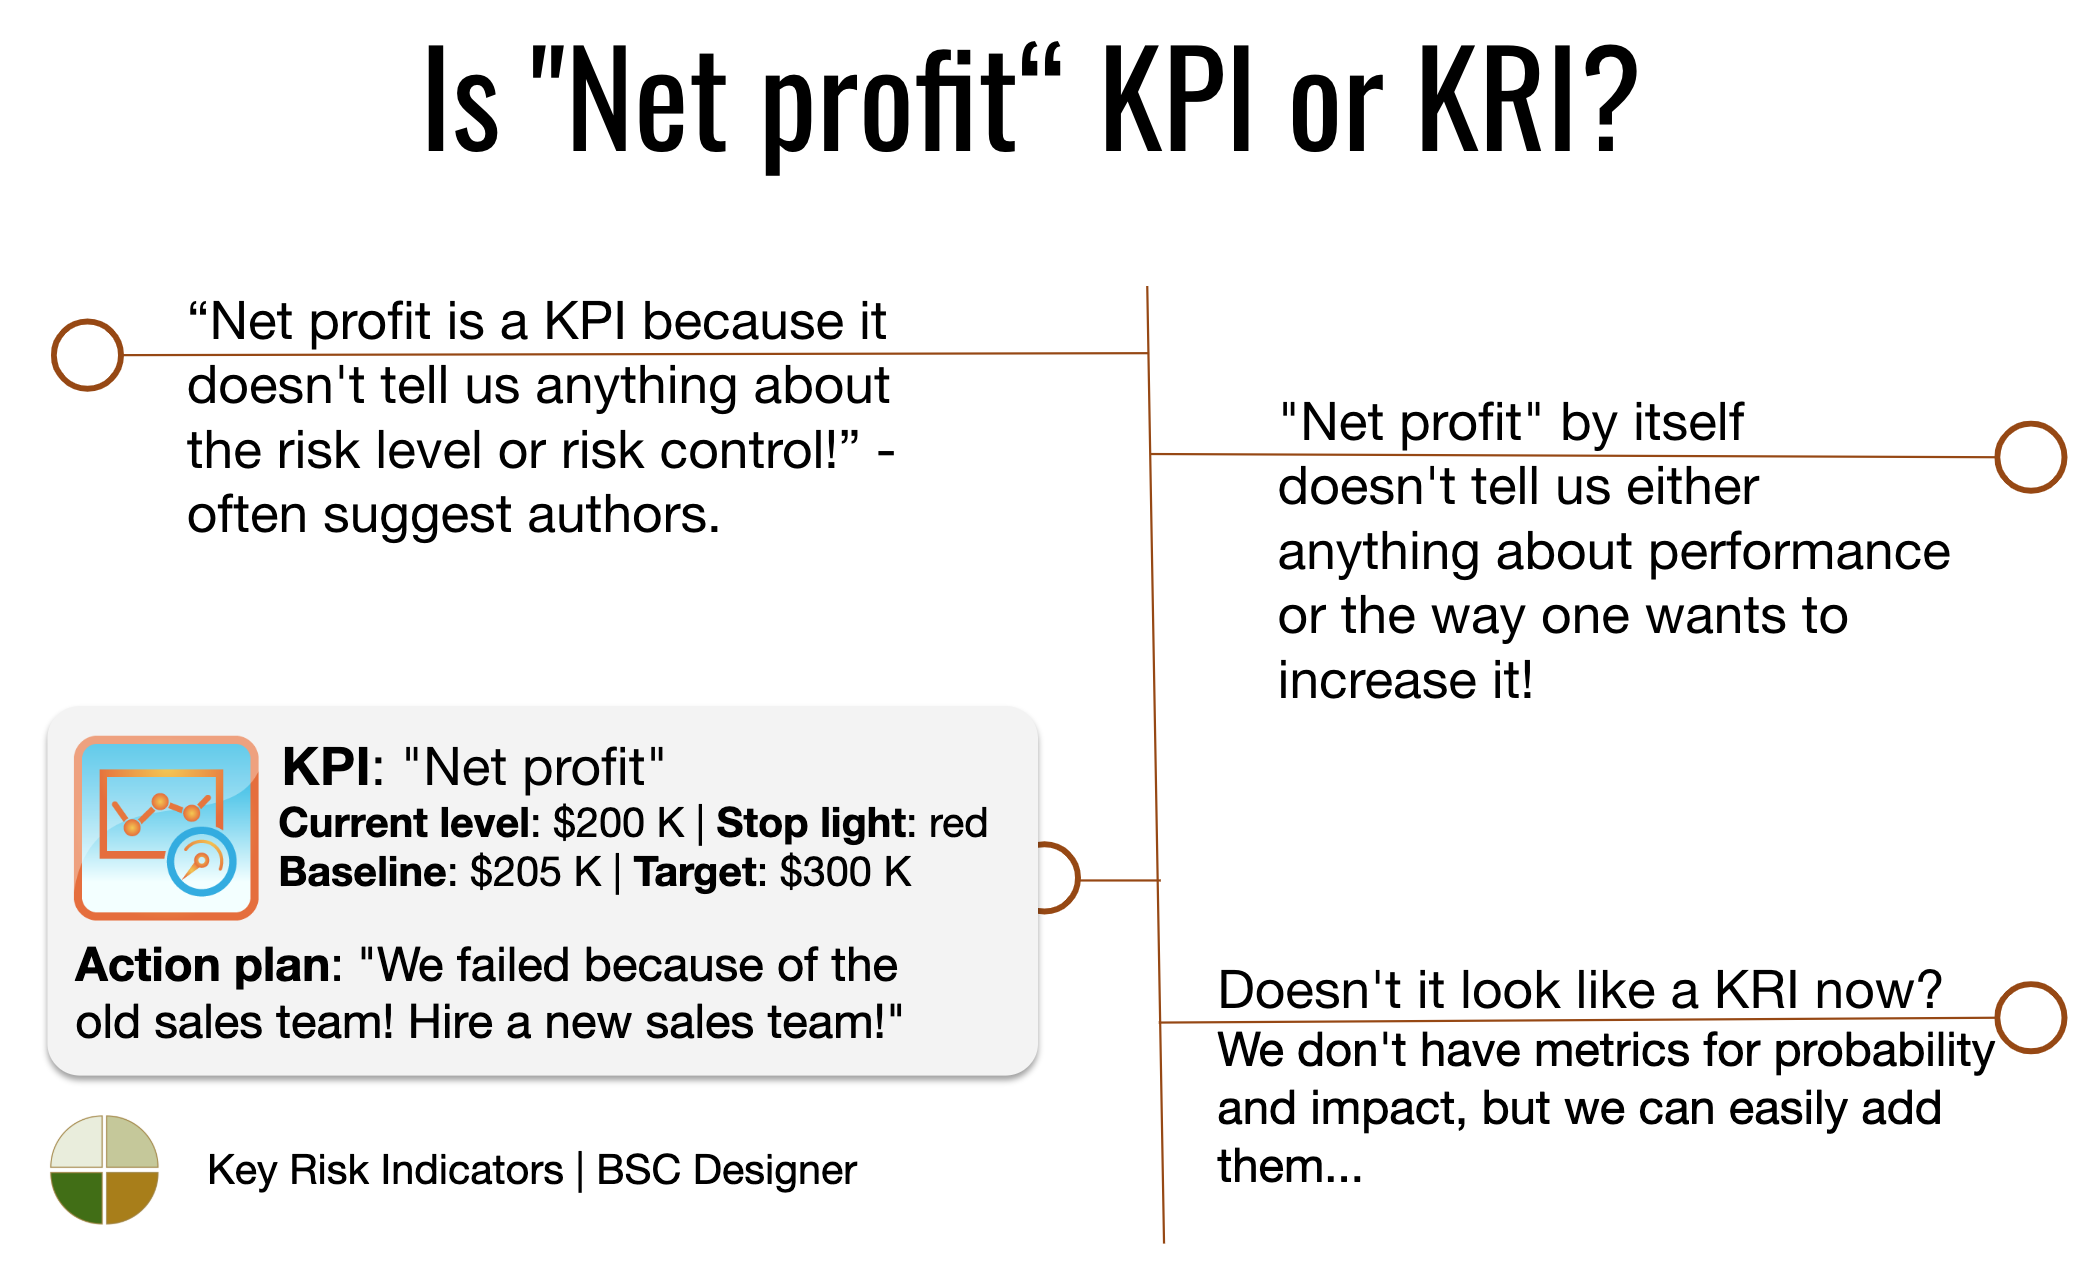 KPI vs KRI